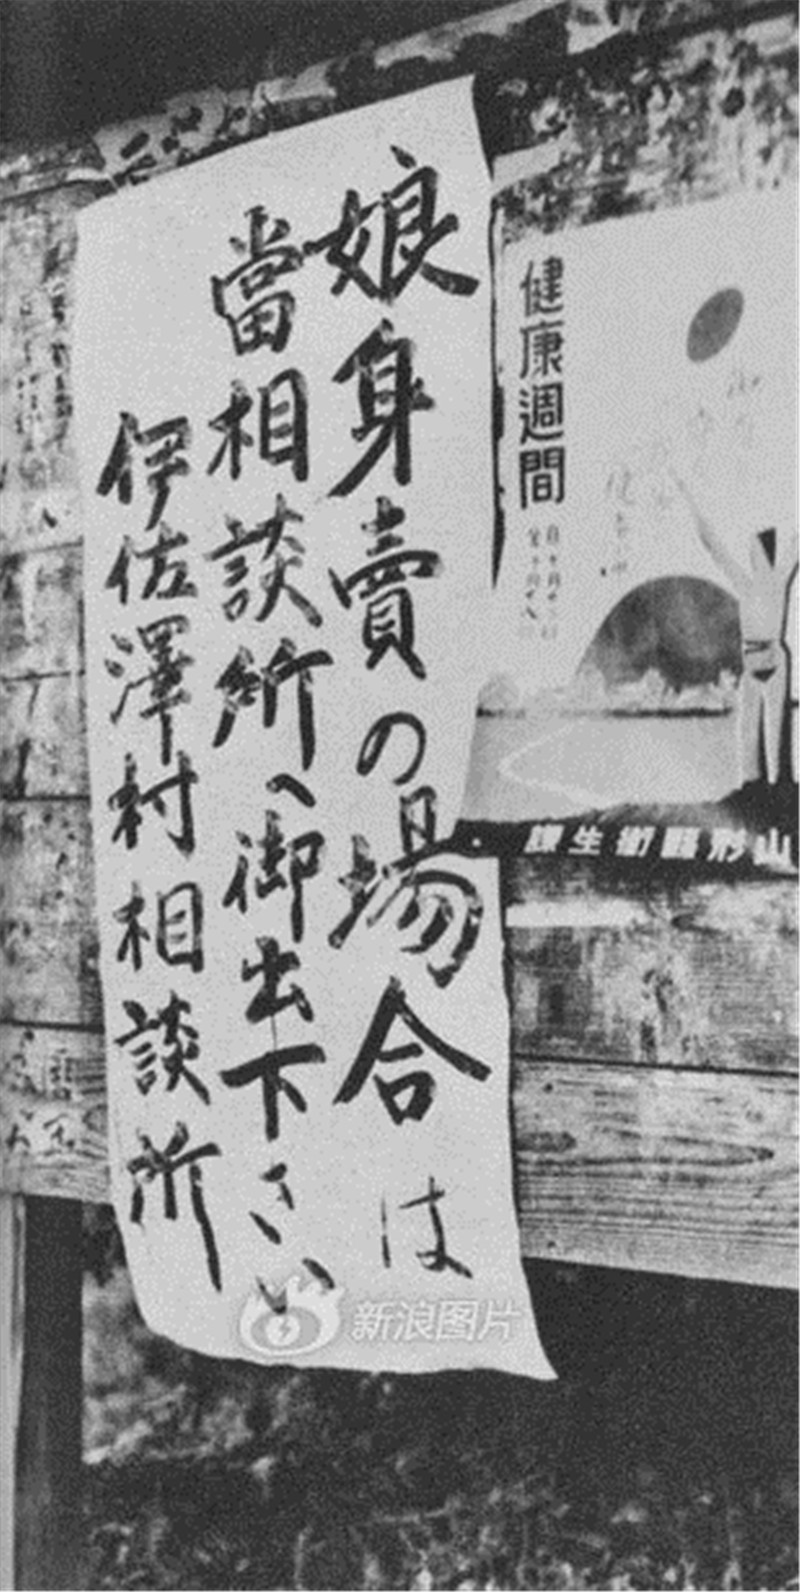 【1931】日本在这一年发动九一八事变有其内在原因，经济危机和严重欠收让日本民间陷入卖儿卖女的境地，整个国家如同火药桶般不稳定。于是，发动对外侵略便成为掠夺财富、重建经济和转移矛盾的首选。图为日本街头的卖孩子广告。